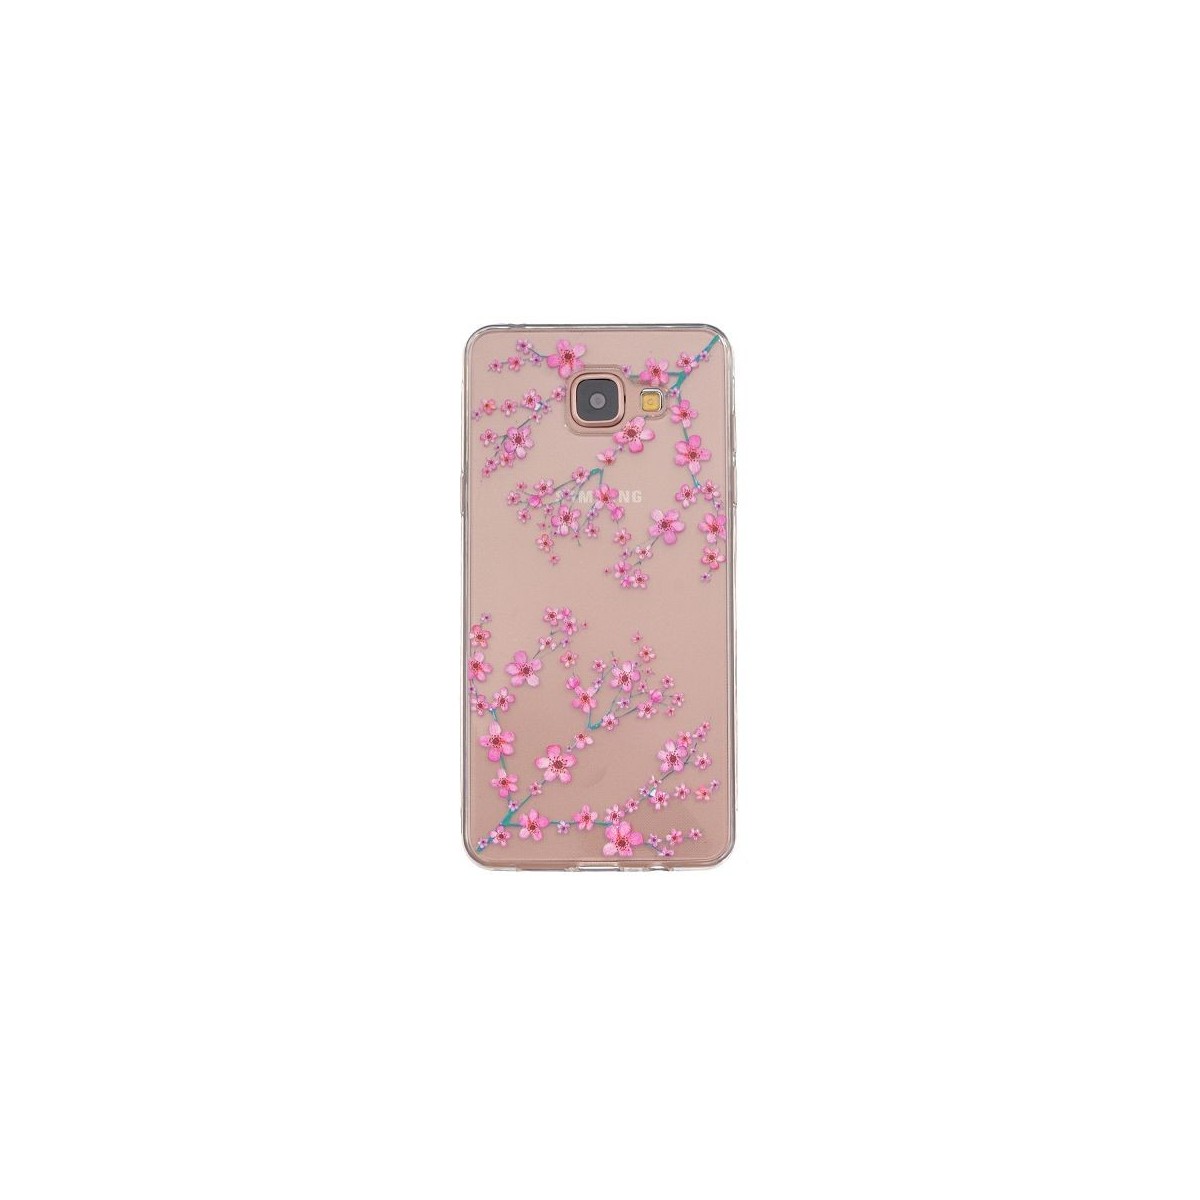 Coque Galaxy A5 (2016) Transparente souple motif Fleurs Japonaises - Crazy Kase